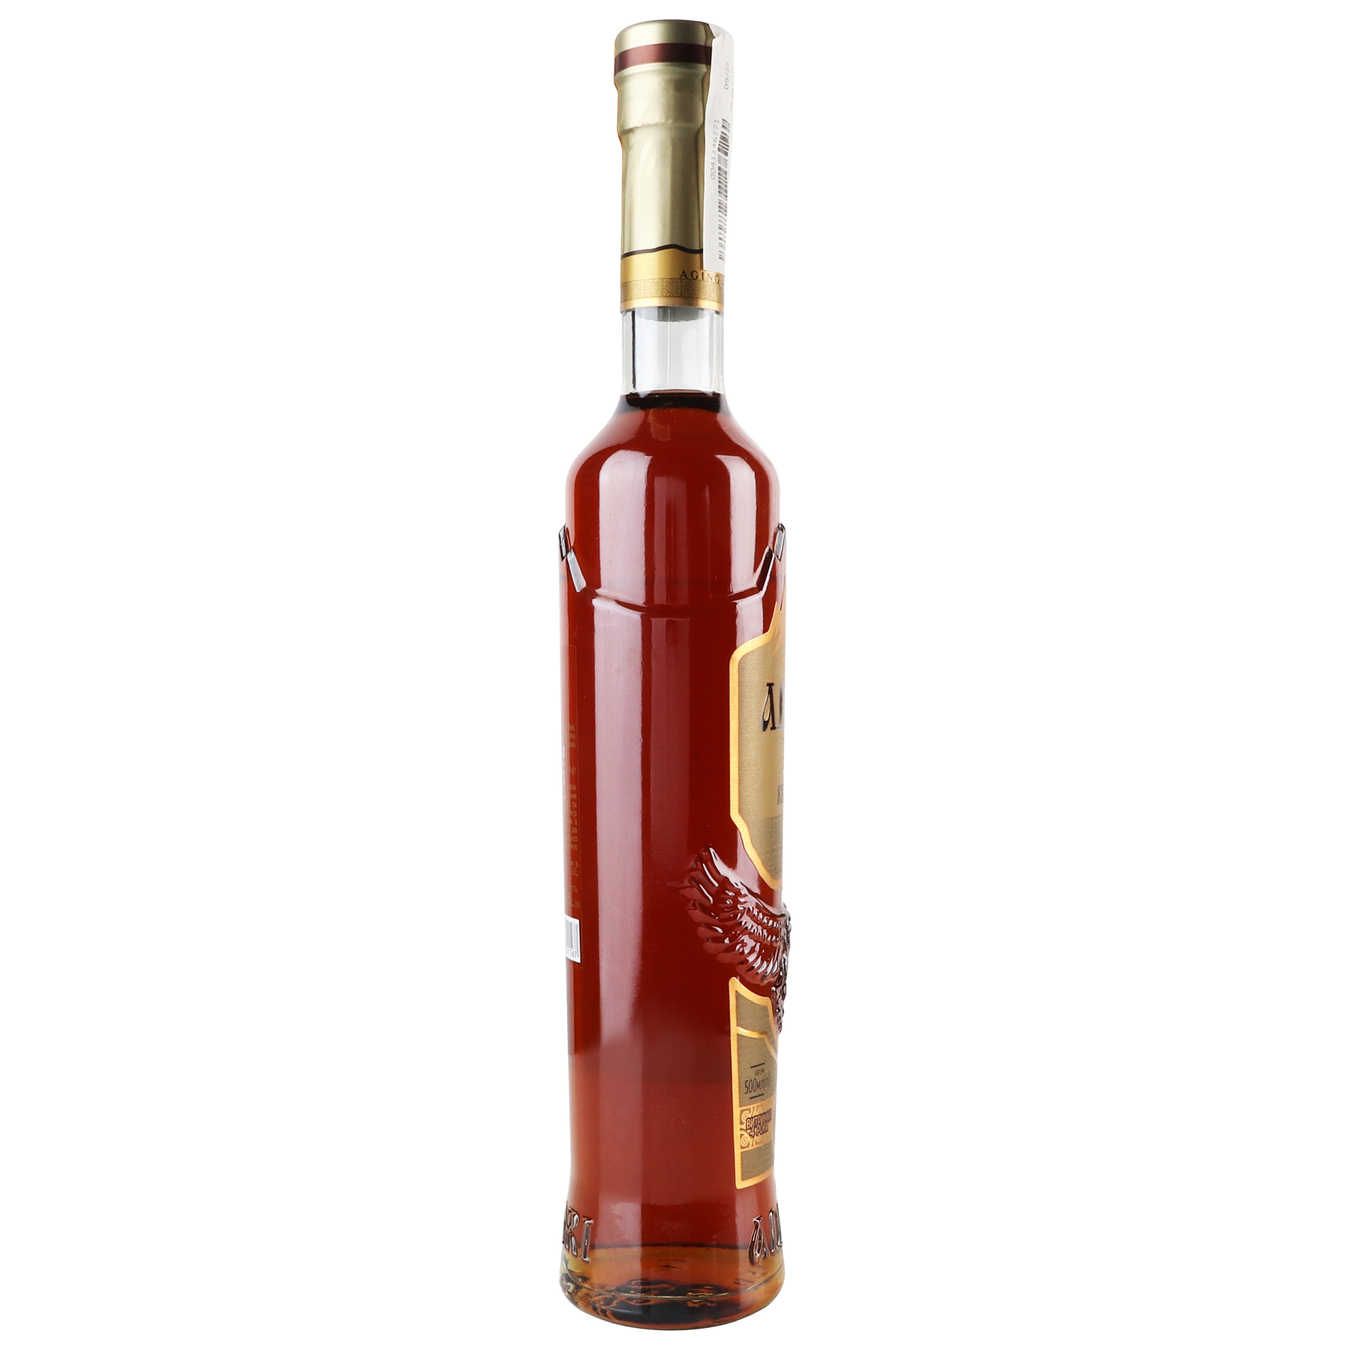 Cognac Adjari 4 stars 40% 0.5 l 3